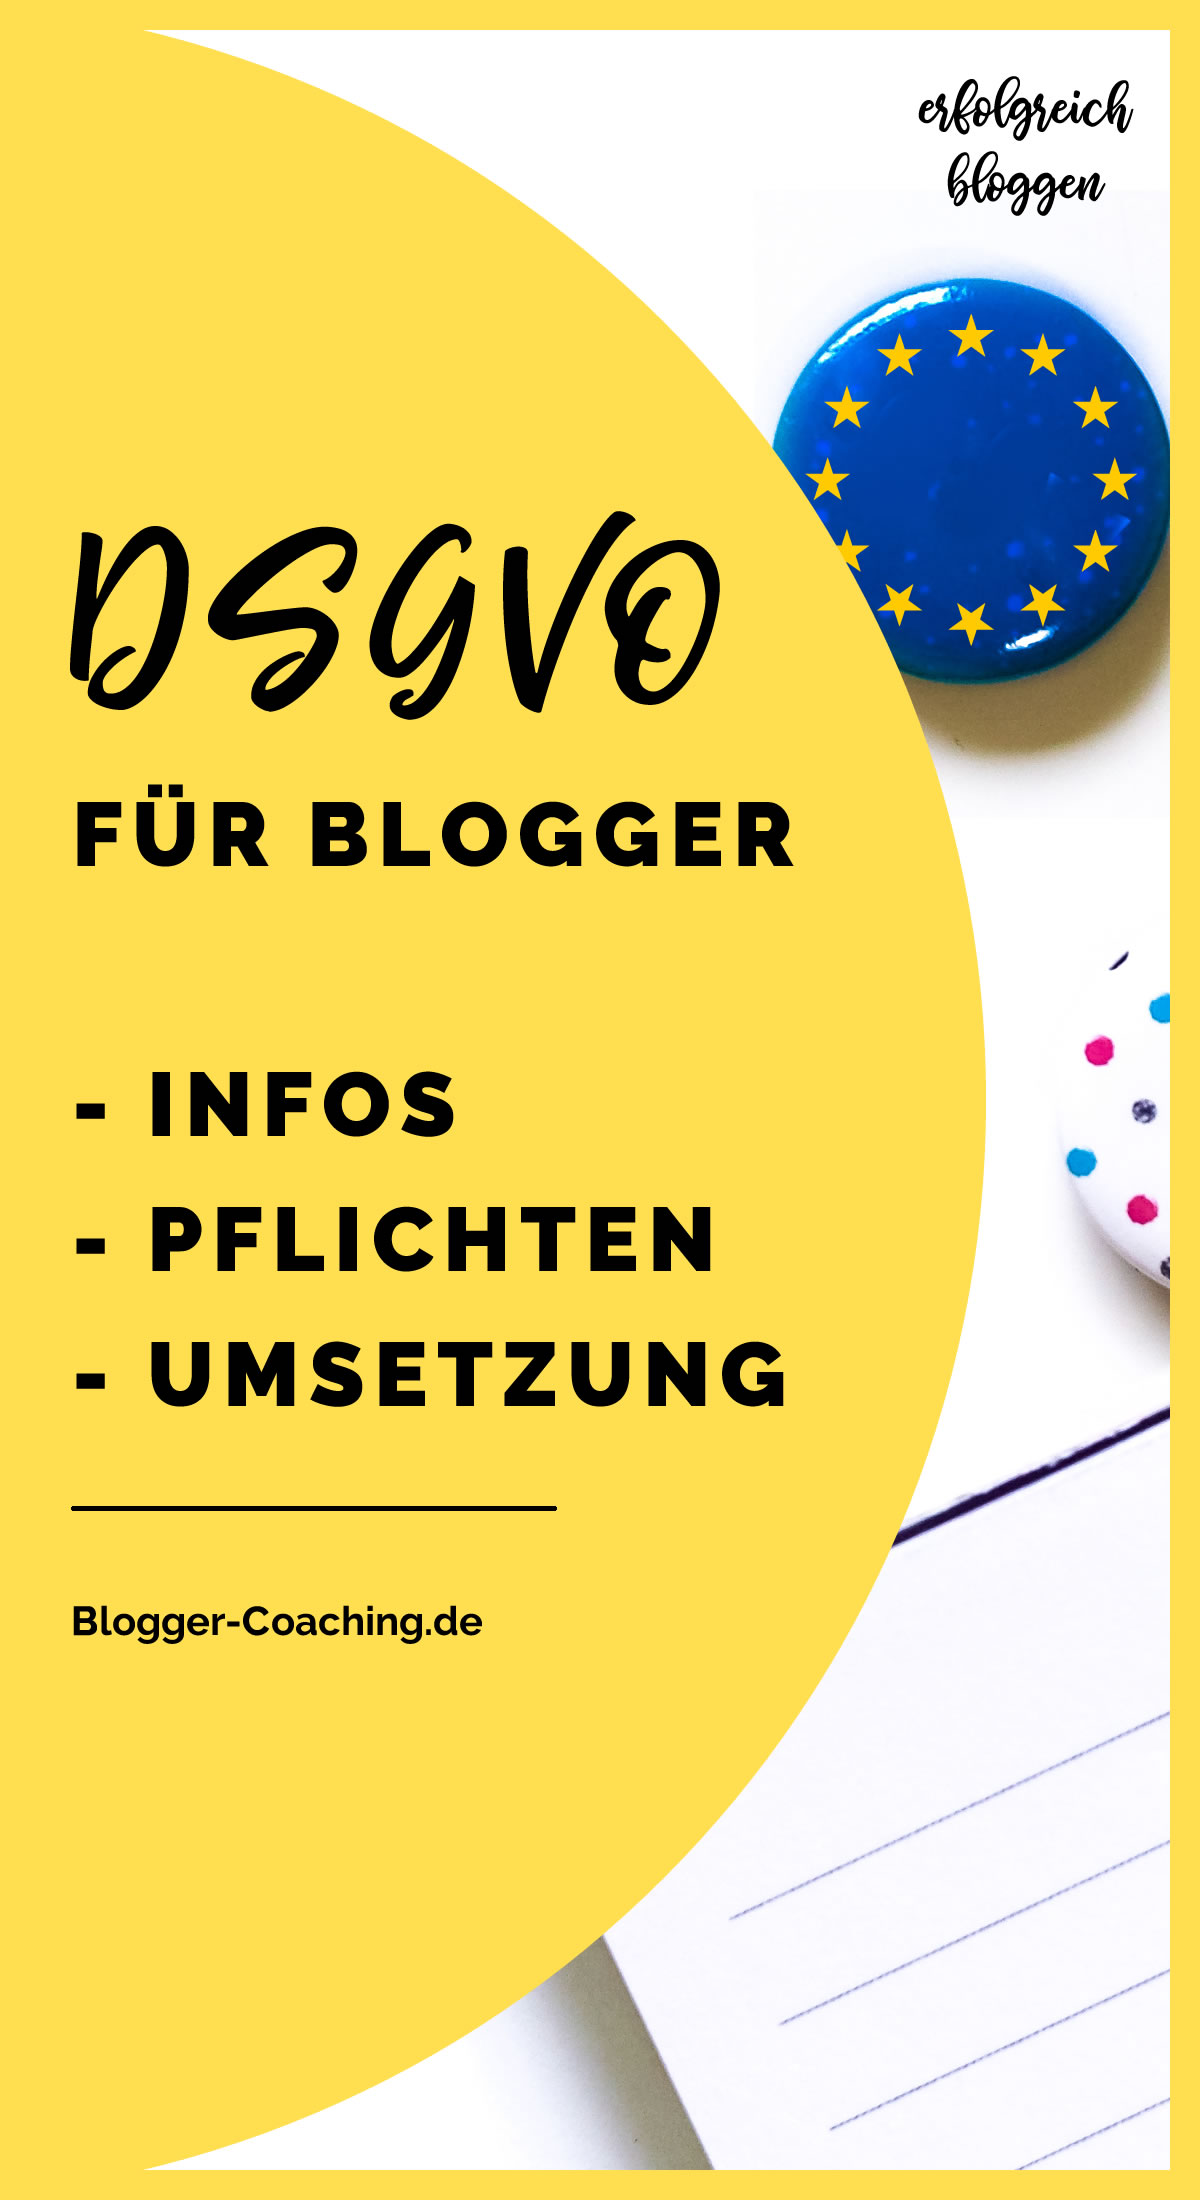 Datenschutzgrundverordnung: DSGVO für Blogger & Websitebetreiber| Blogger-Coaching.de - Erfolgreich bloggen & Geld verdienen